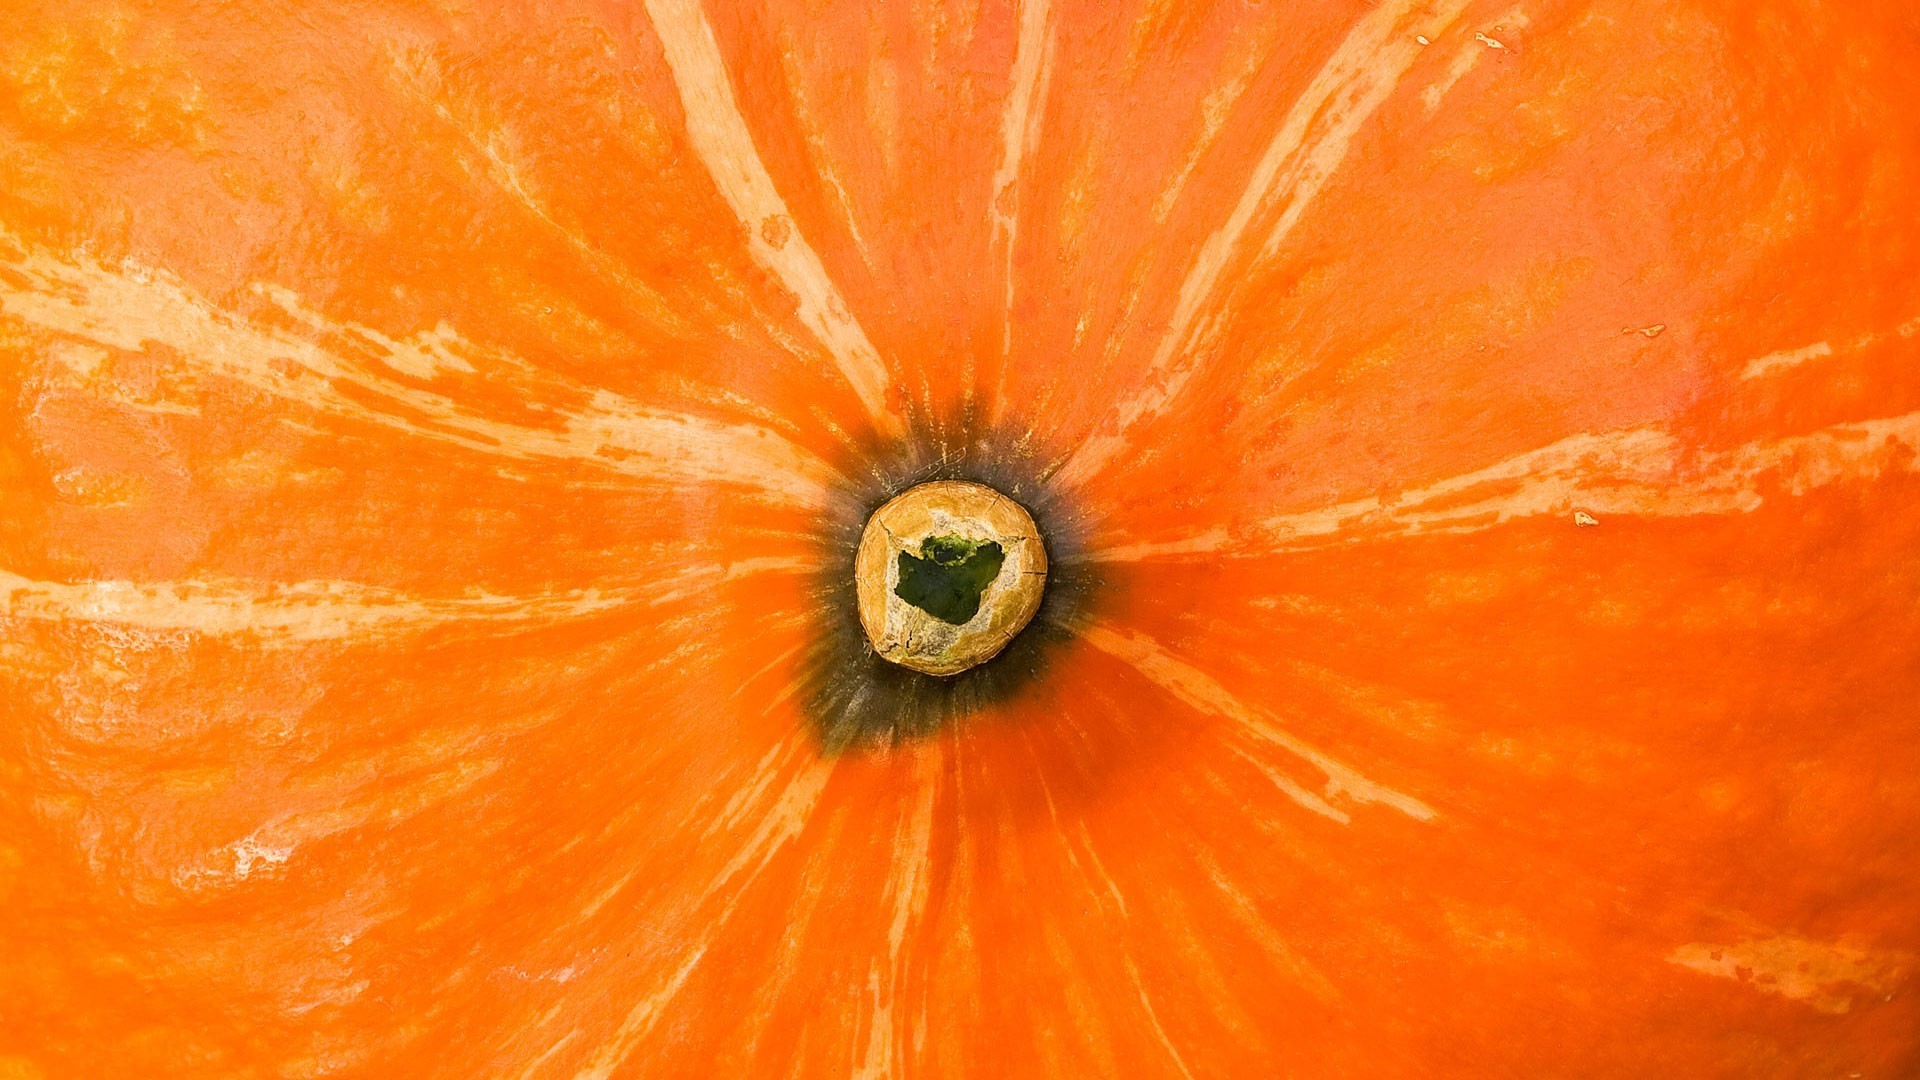 General 1920x1080 orange orange background island pumpkin